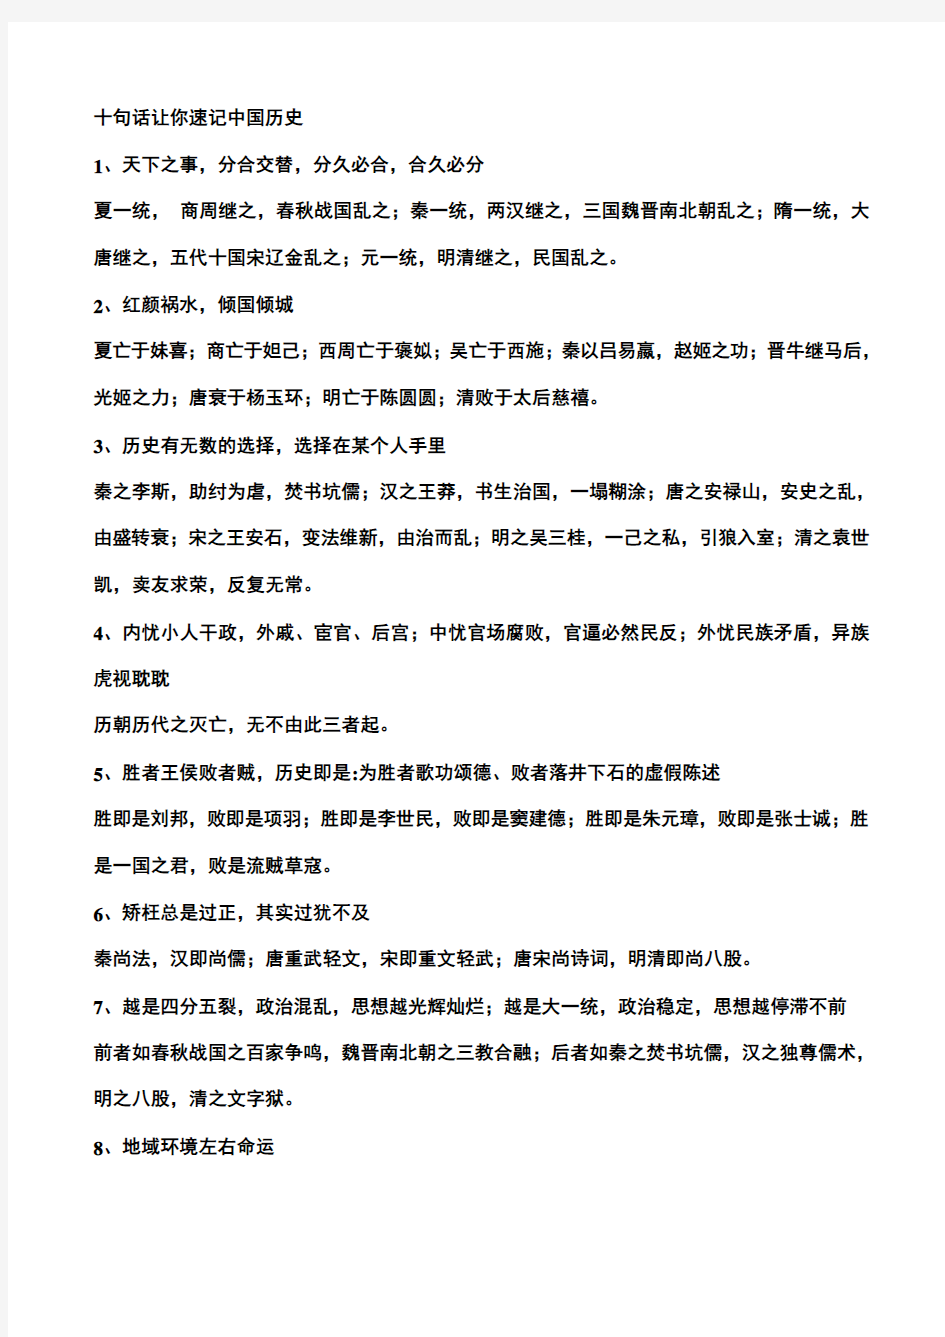 十句话让你速记中国历史